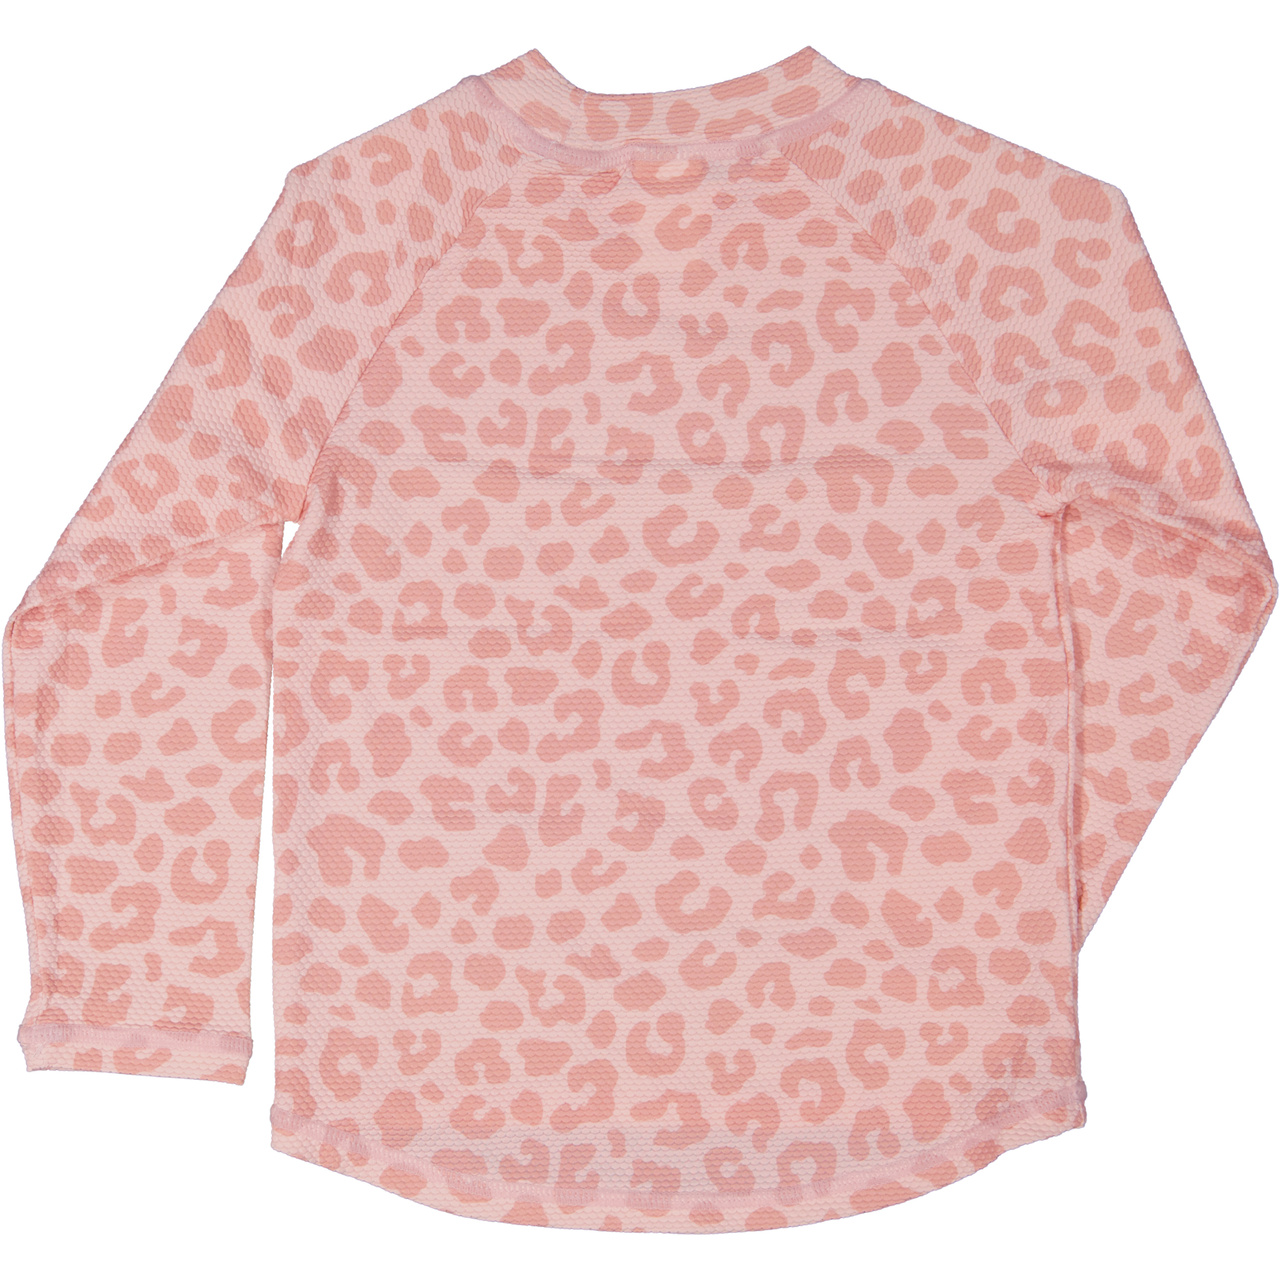 UV-L.S sweater Pink Leo  122/128